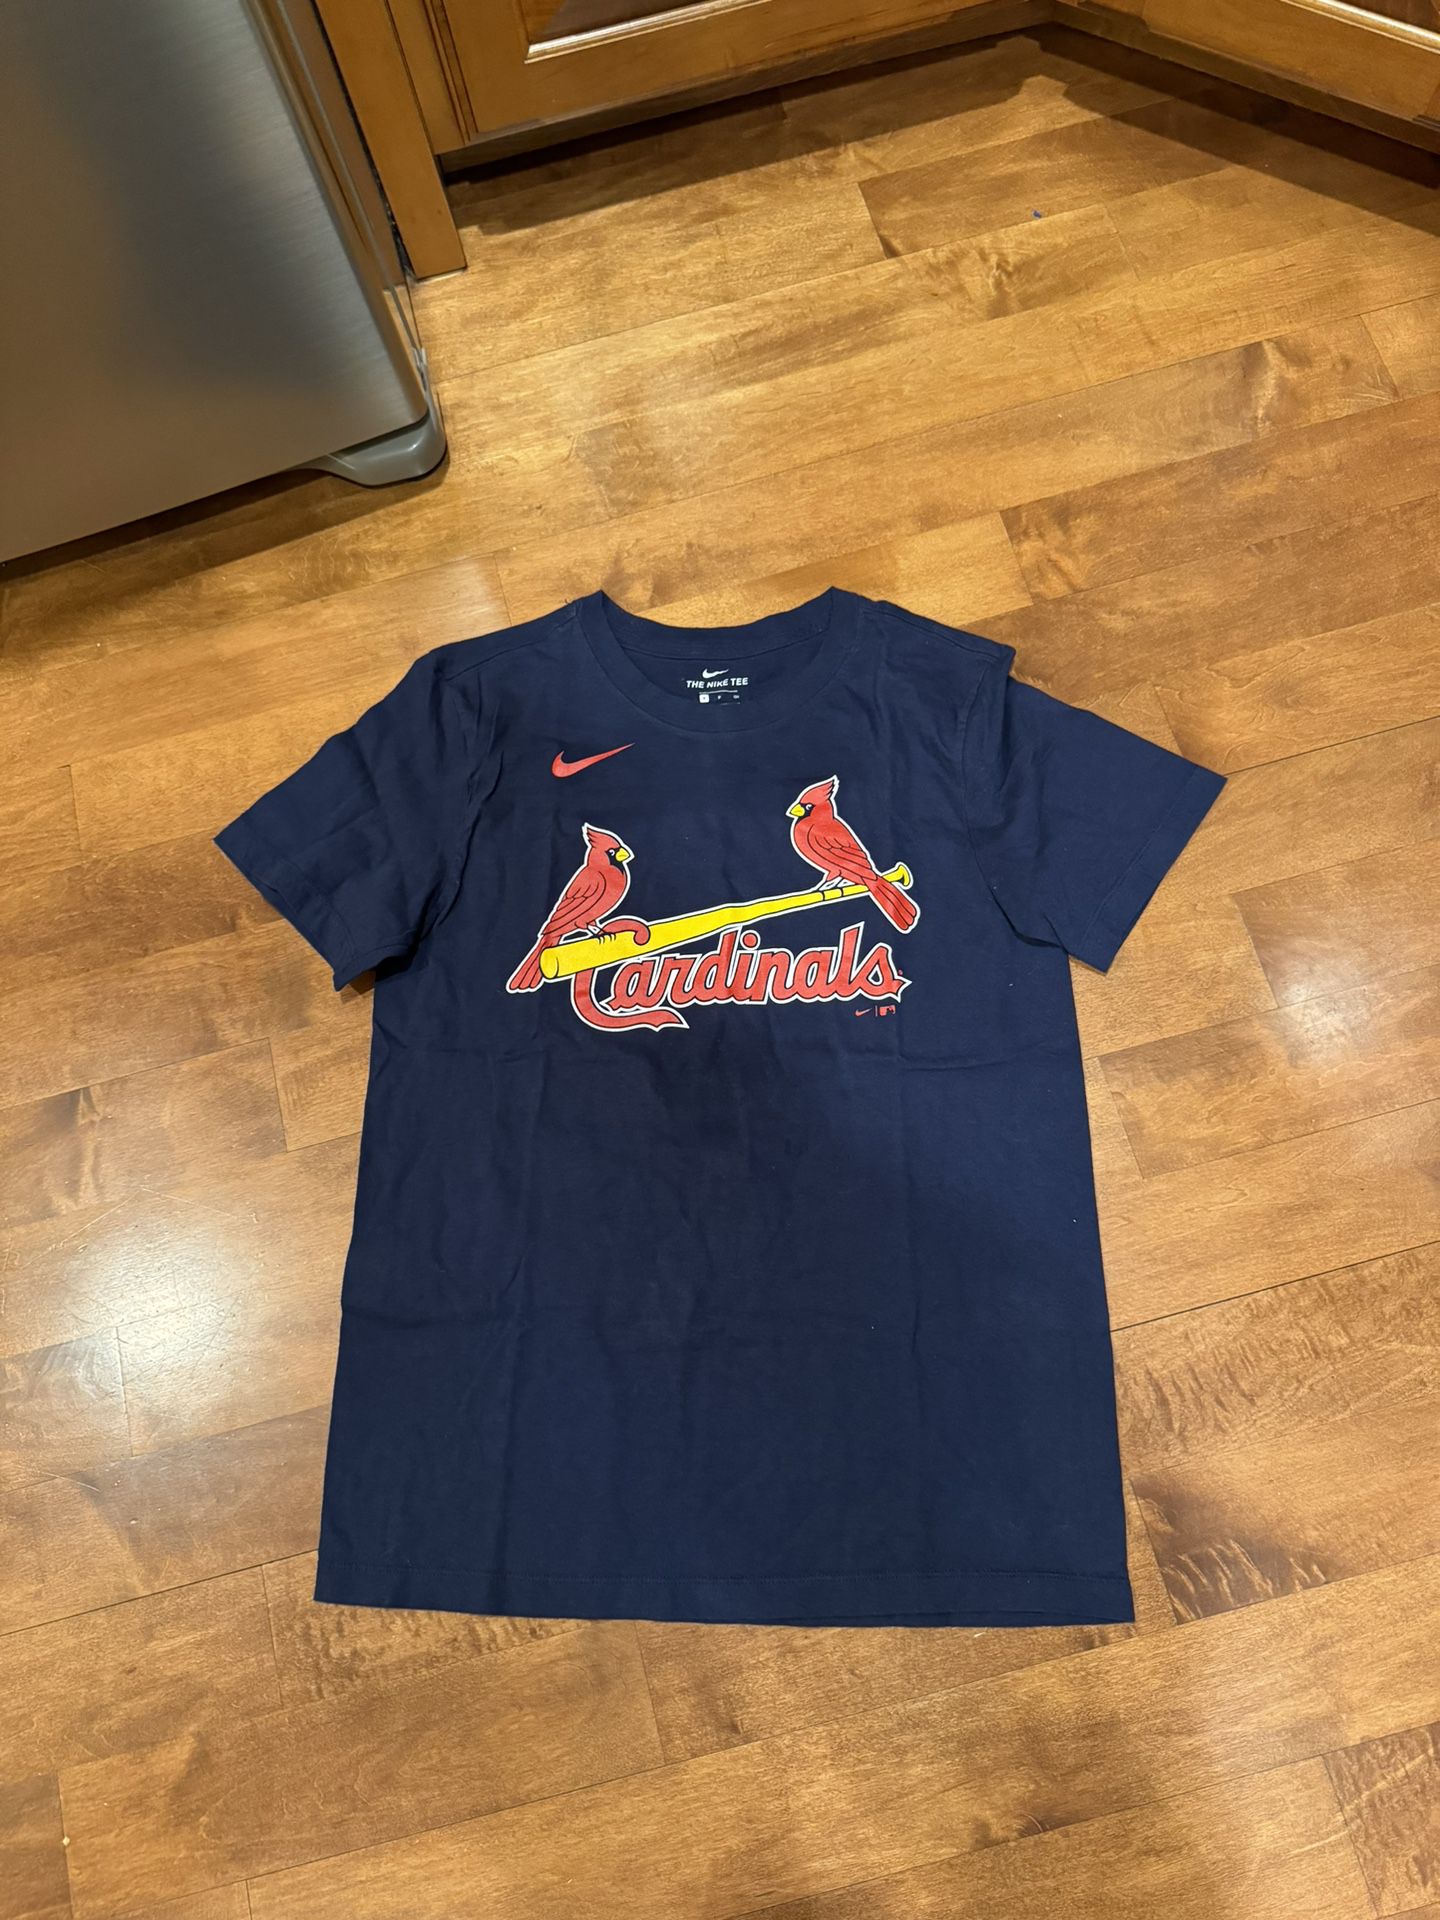 Mens Nike St Louis Cardinals Molina Tshirt Shipping Avaialbe 